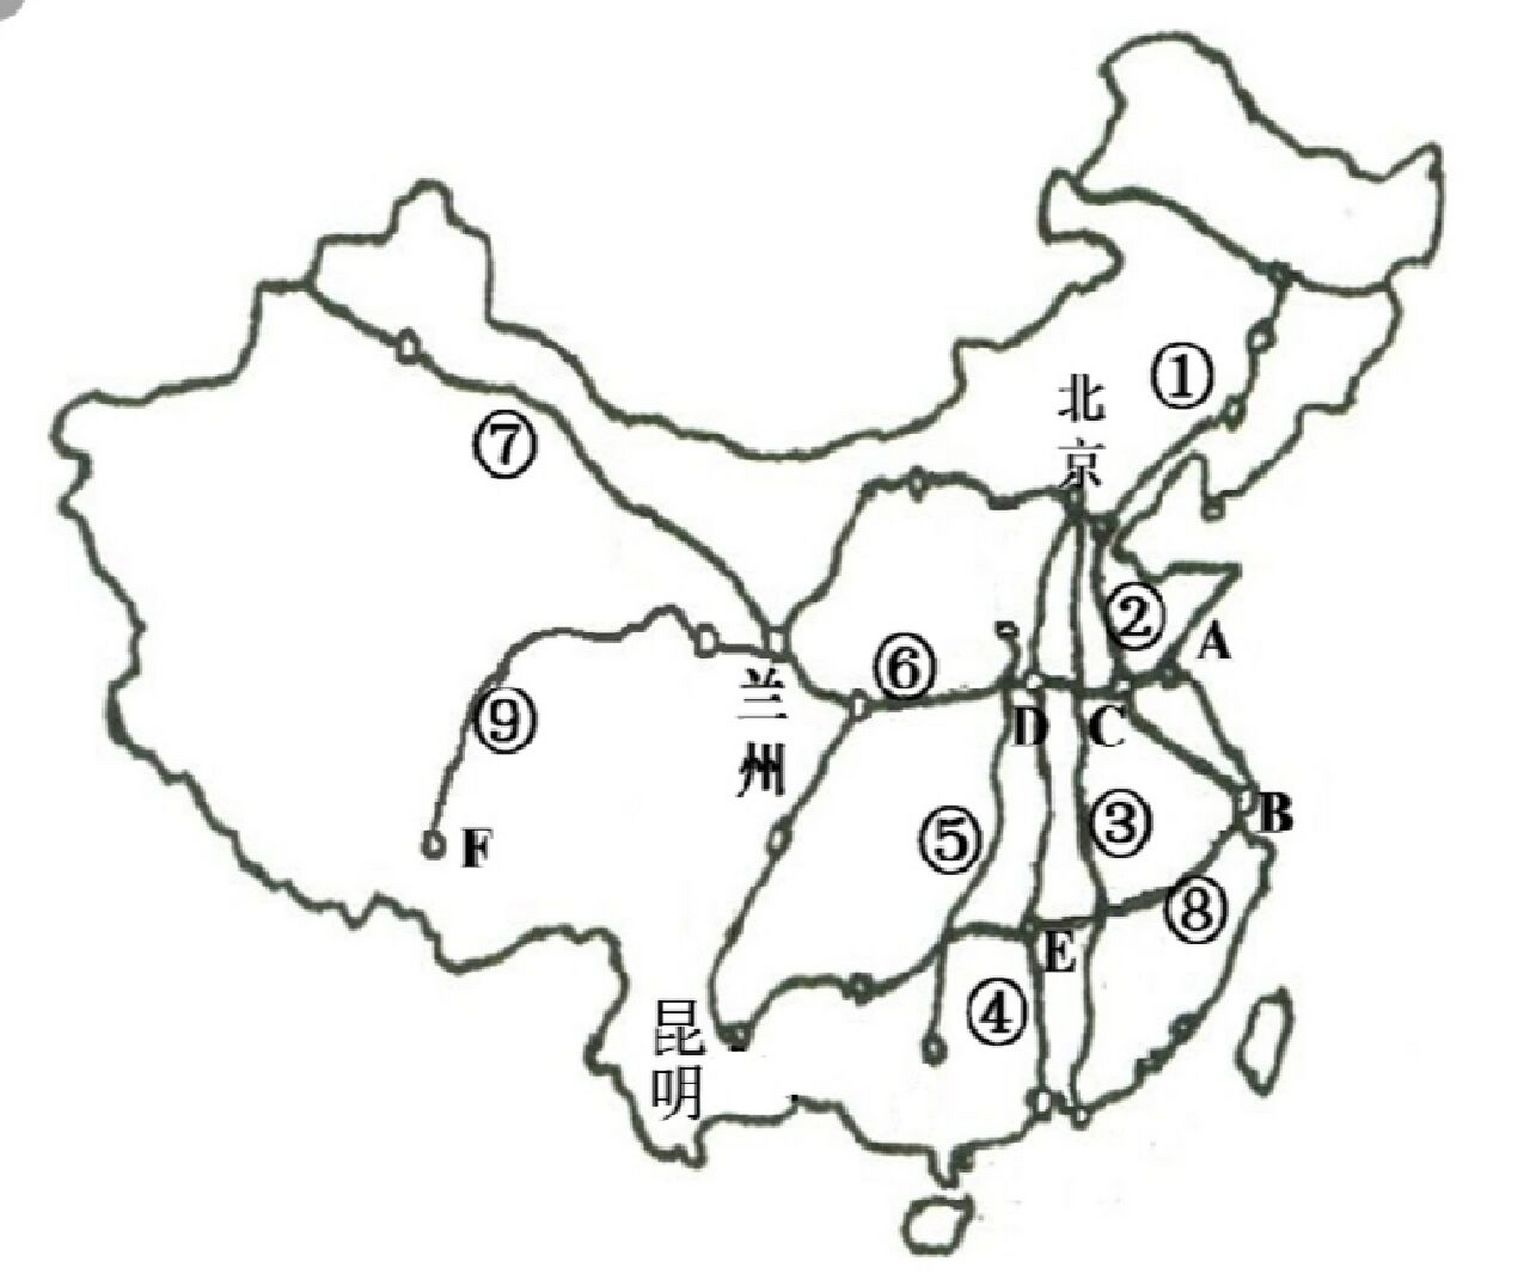 八上地理复习提纲——交通运输 中国铁路干线你记住几条?1